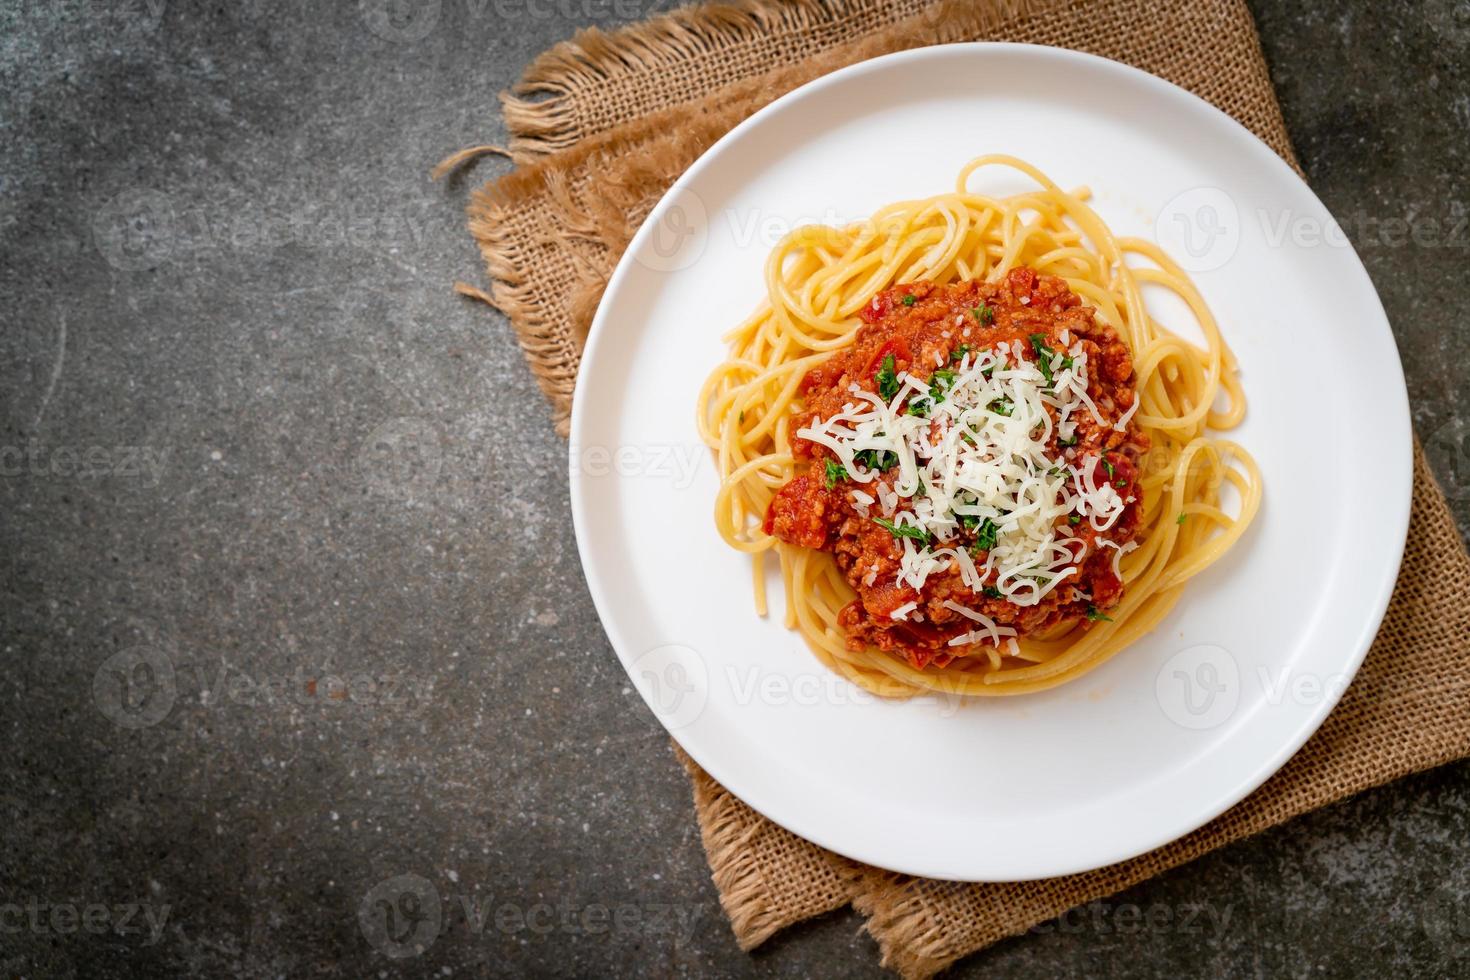 spaghettis au porc bolognaise ou spaghettis à la sauce tomate au porc haché - style cuisine italienne photo